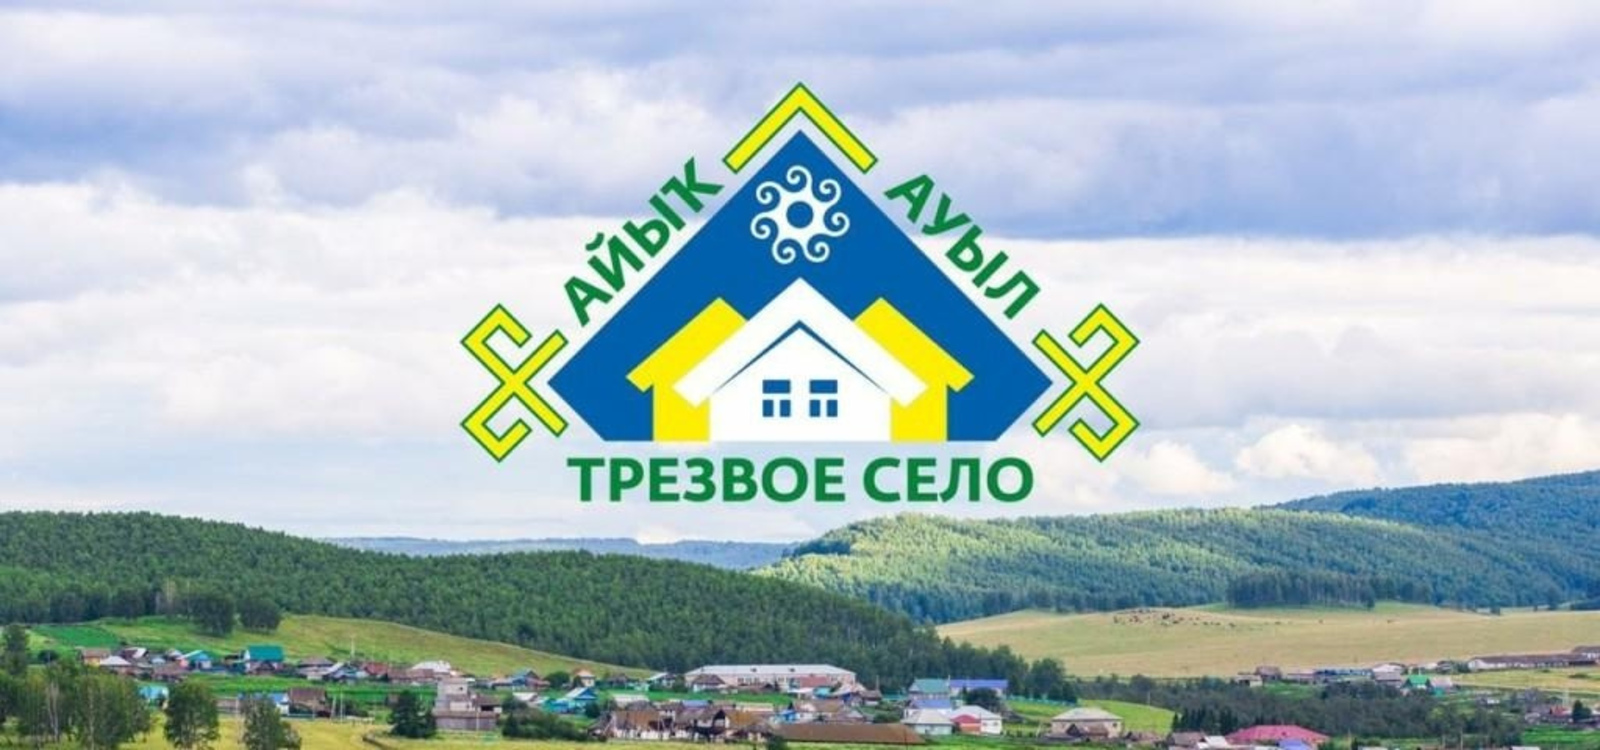 ИА Башинформ В Башкирии стартовал завершающий этап конкурса «Трезвое село»